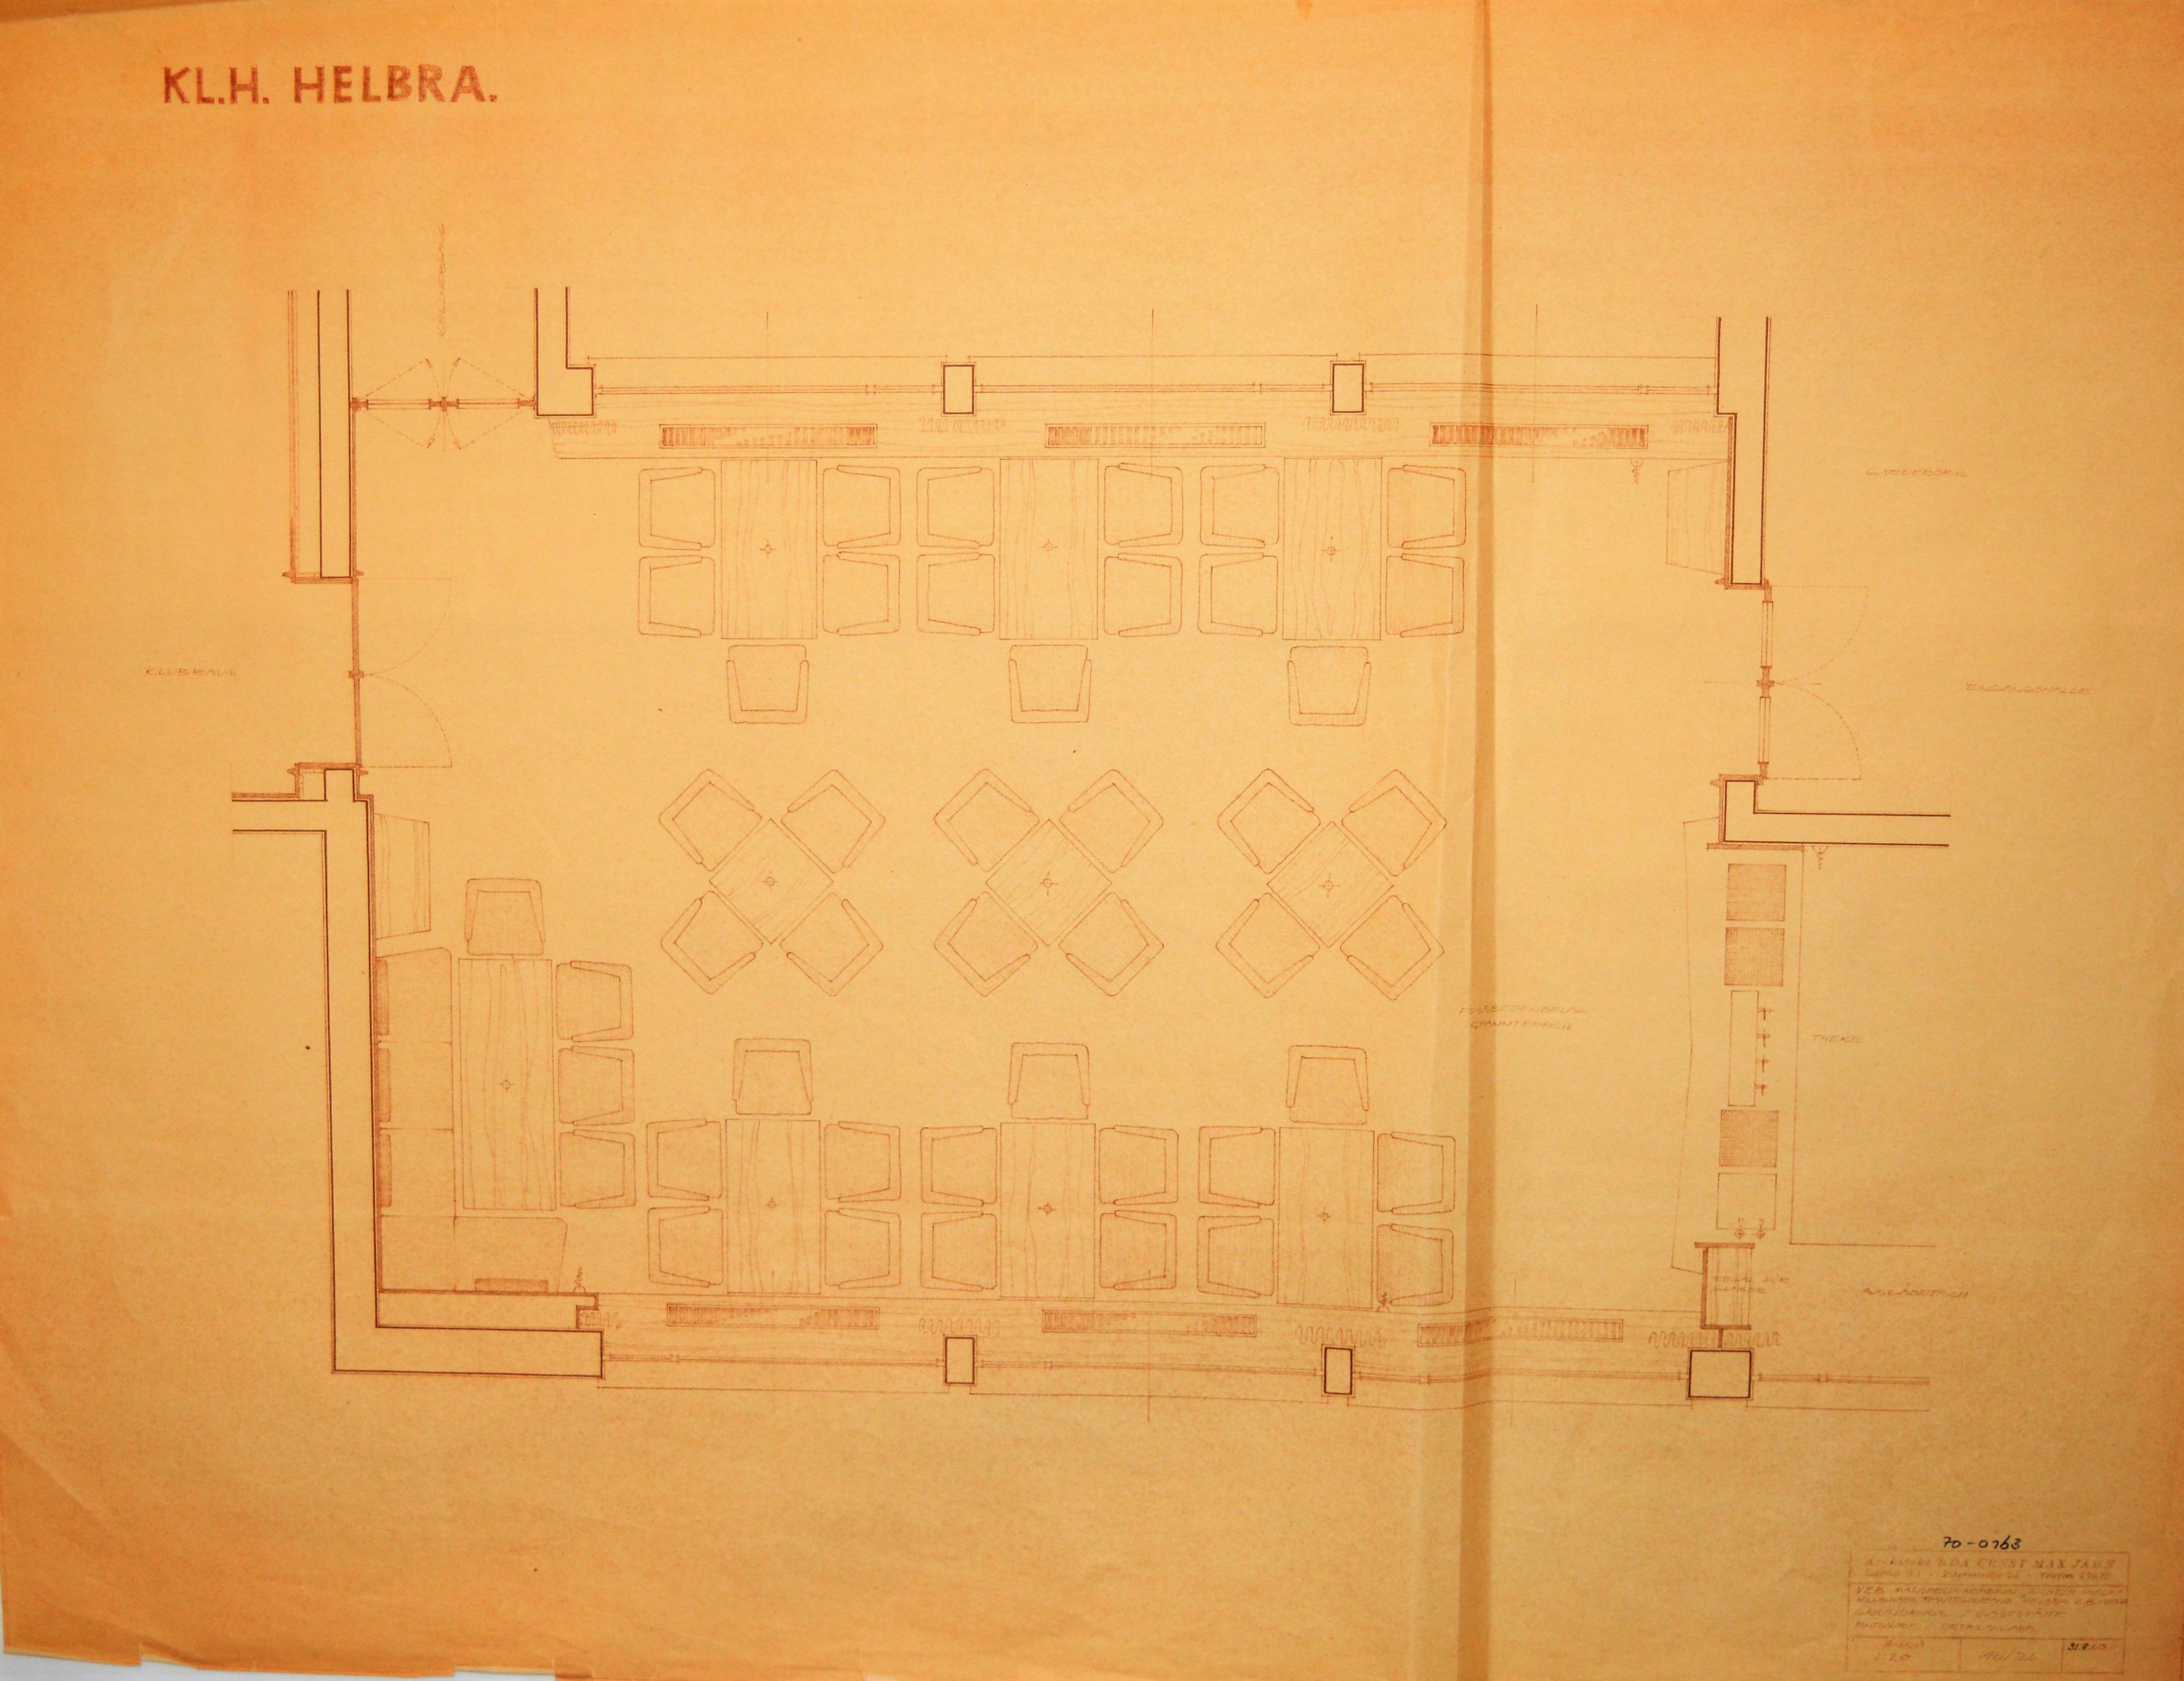 KL.H. Helbra. Klubhaus Rautenkranz  Helbra. 2. .-Abschn. Grundriss / Gaststätte Entwurf /  Detailangabe (Mansfeld-Museum im Humboldtschloss CC BY-NC-SA)